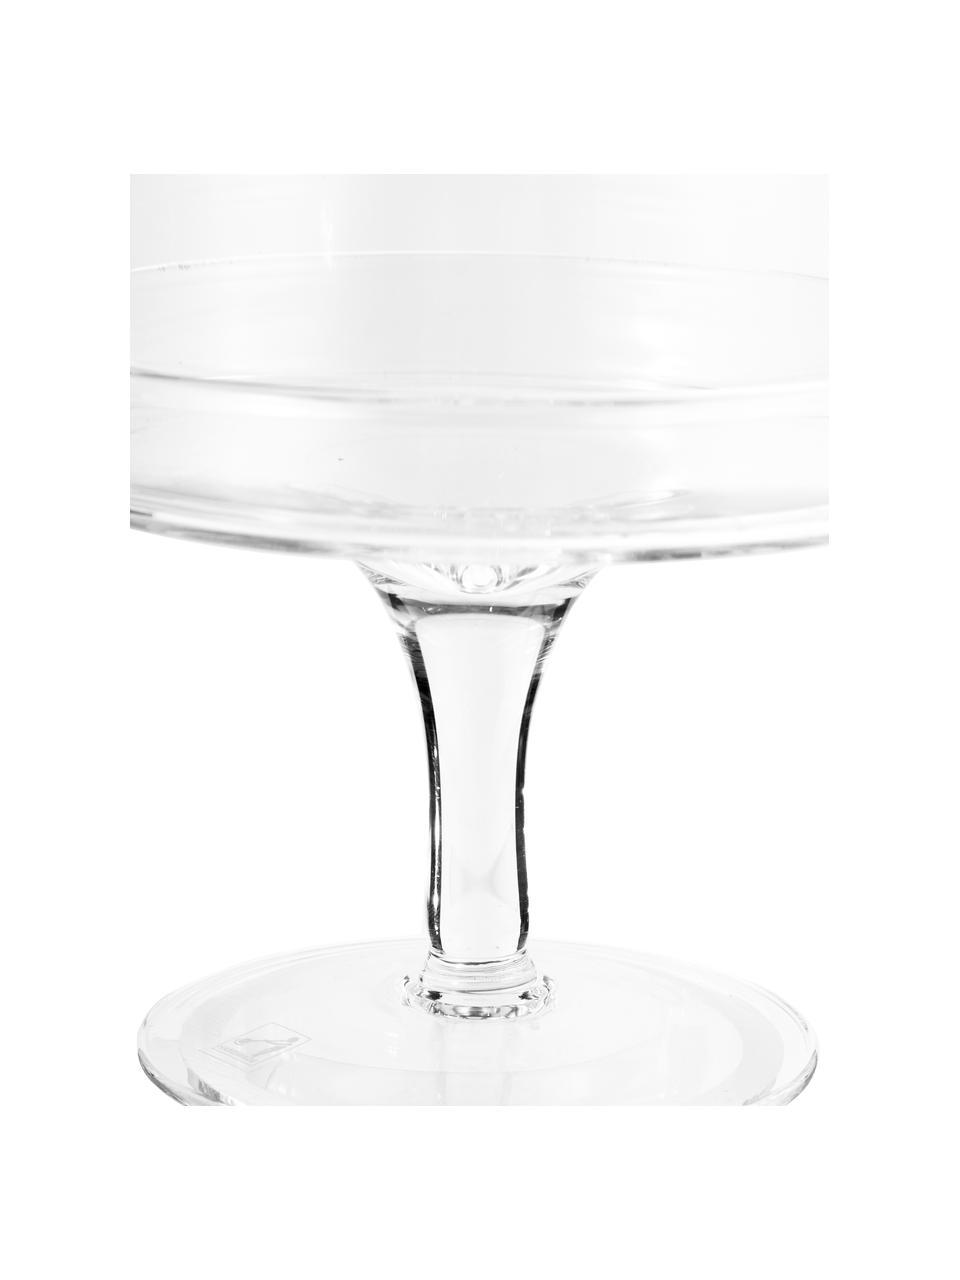 XS Etagere Dolce aus Glas, Ø 12 cm, Glas, Transparent, H 20 cm